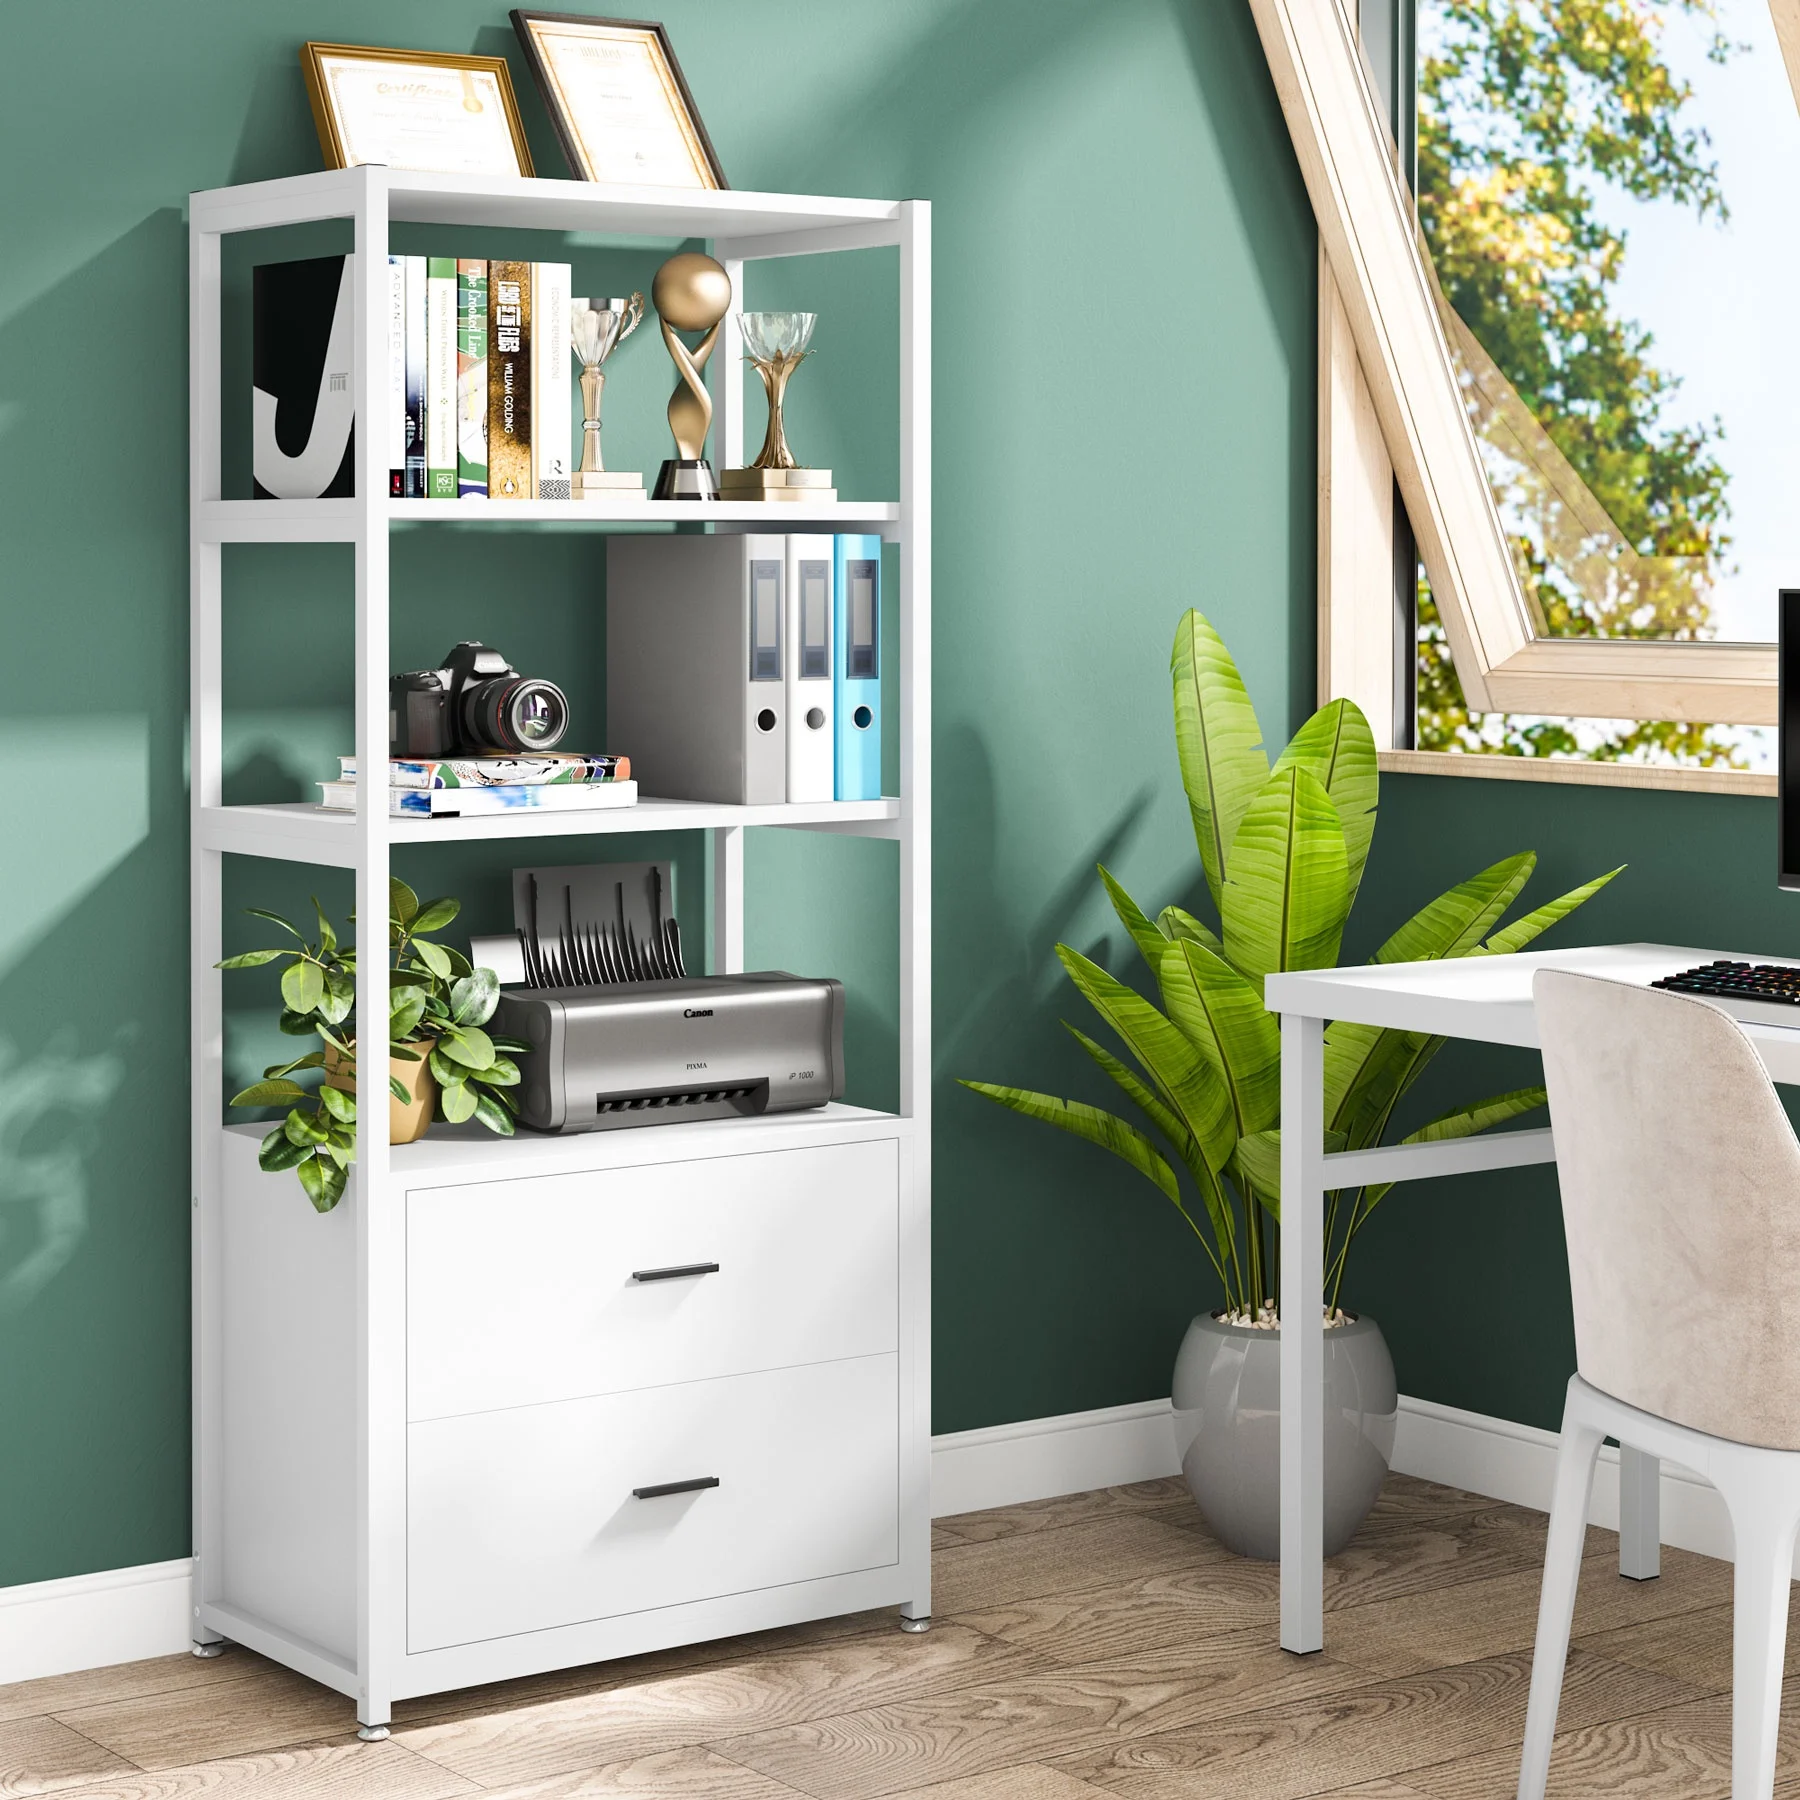 Modern Open Steel Frame Bookcase 4-Tier Bookshelf Slim Shelving Etagere Unit for Bedroom Home Office